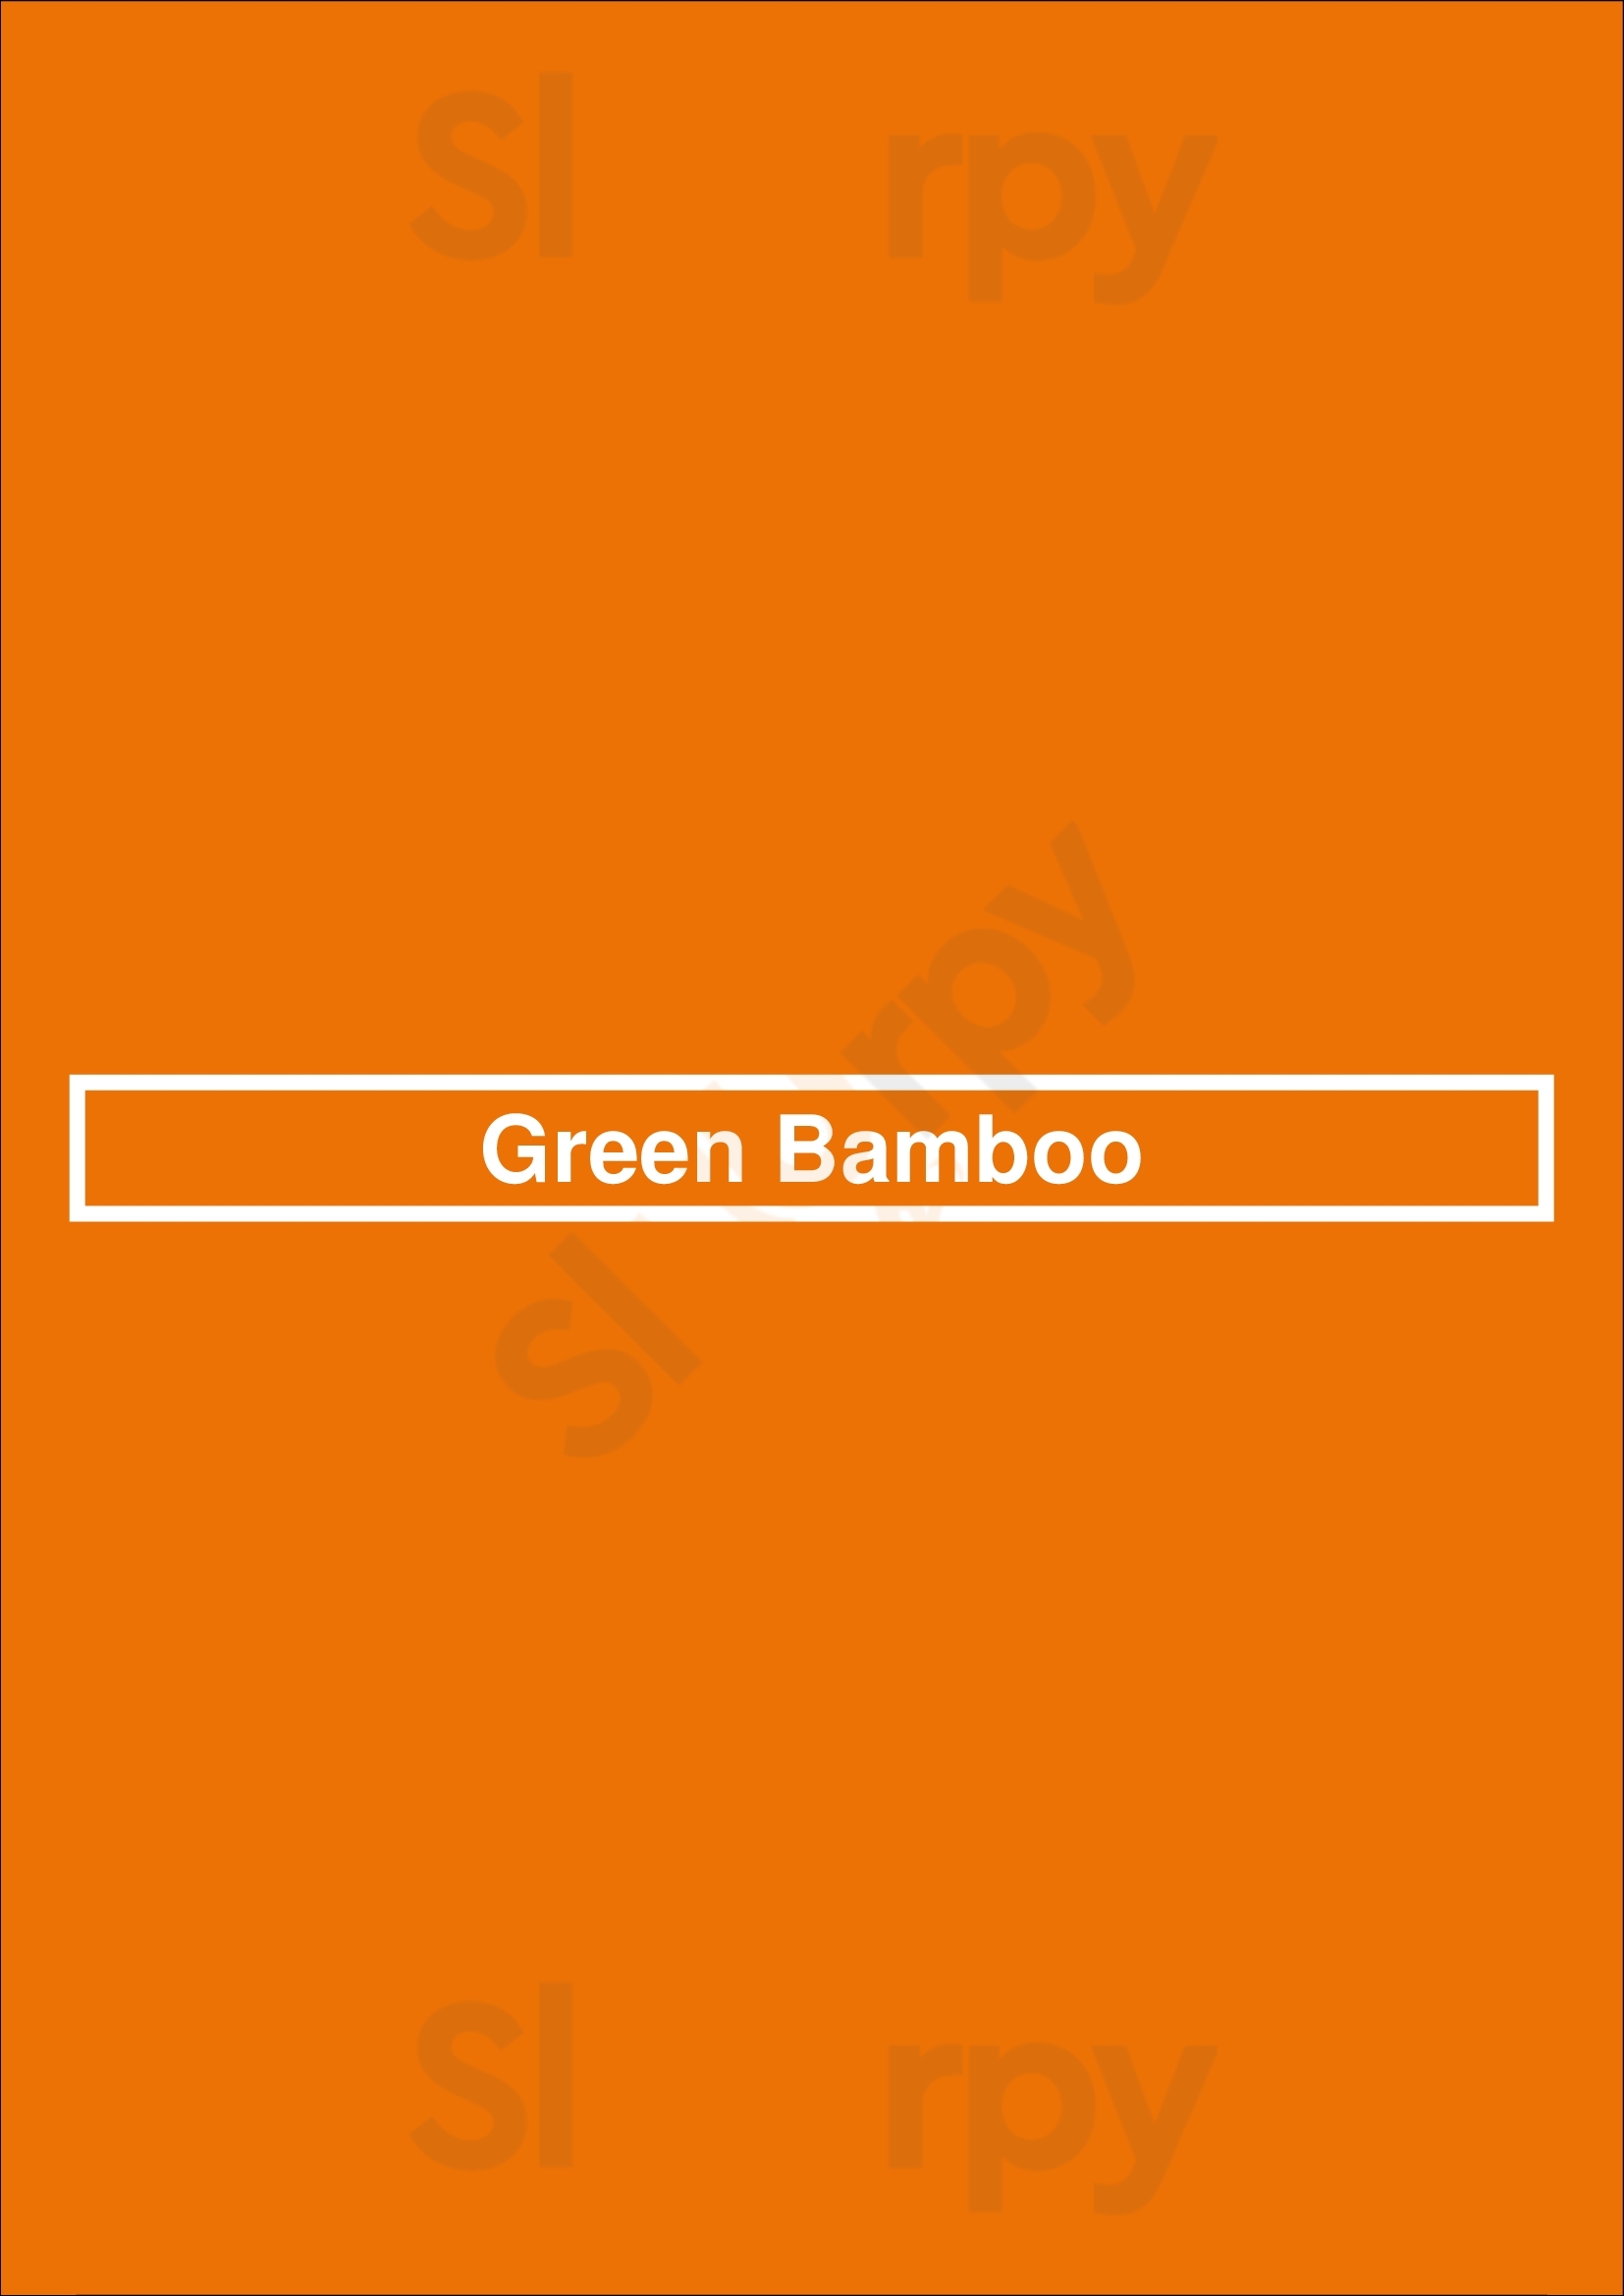 Green Bamboo Buenos Aires Menu - 1